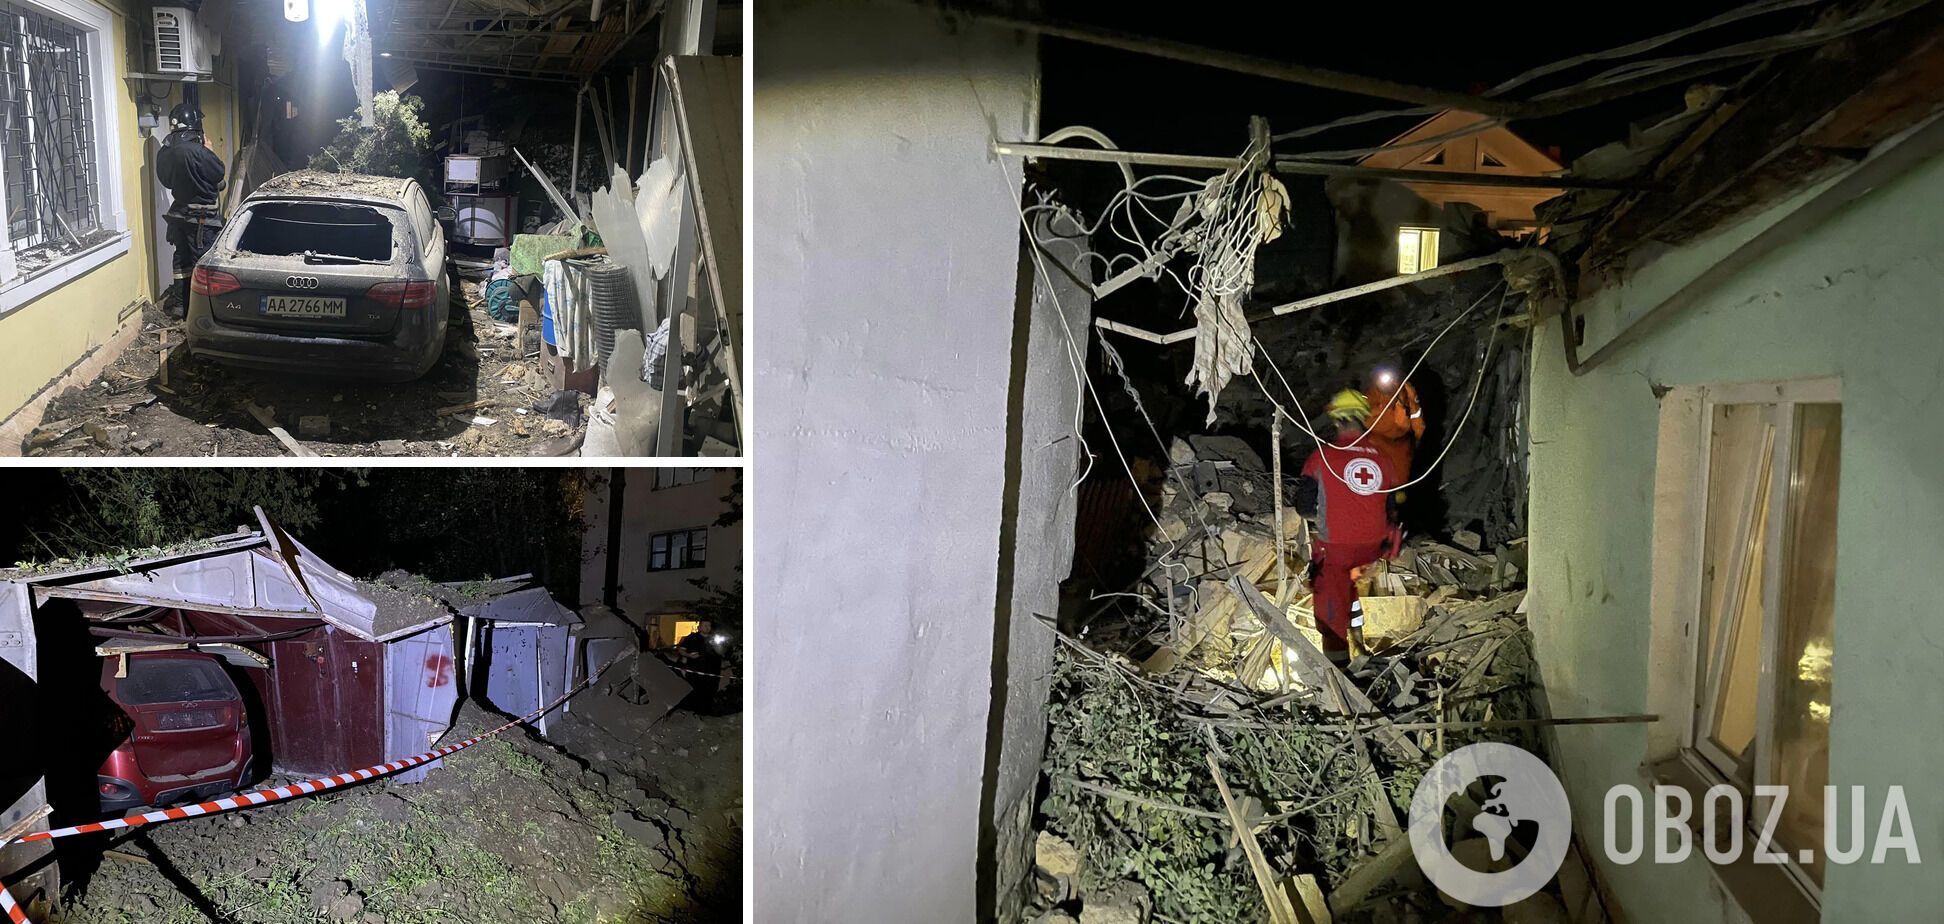 З'явилися нові фото та подробиці нічної атаки РФ на Одесу: в місті є руйнування, пошкоджено собор УПЦ МП